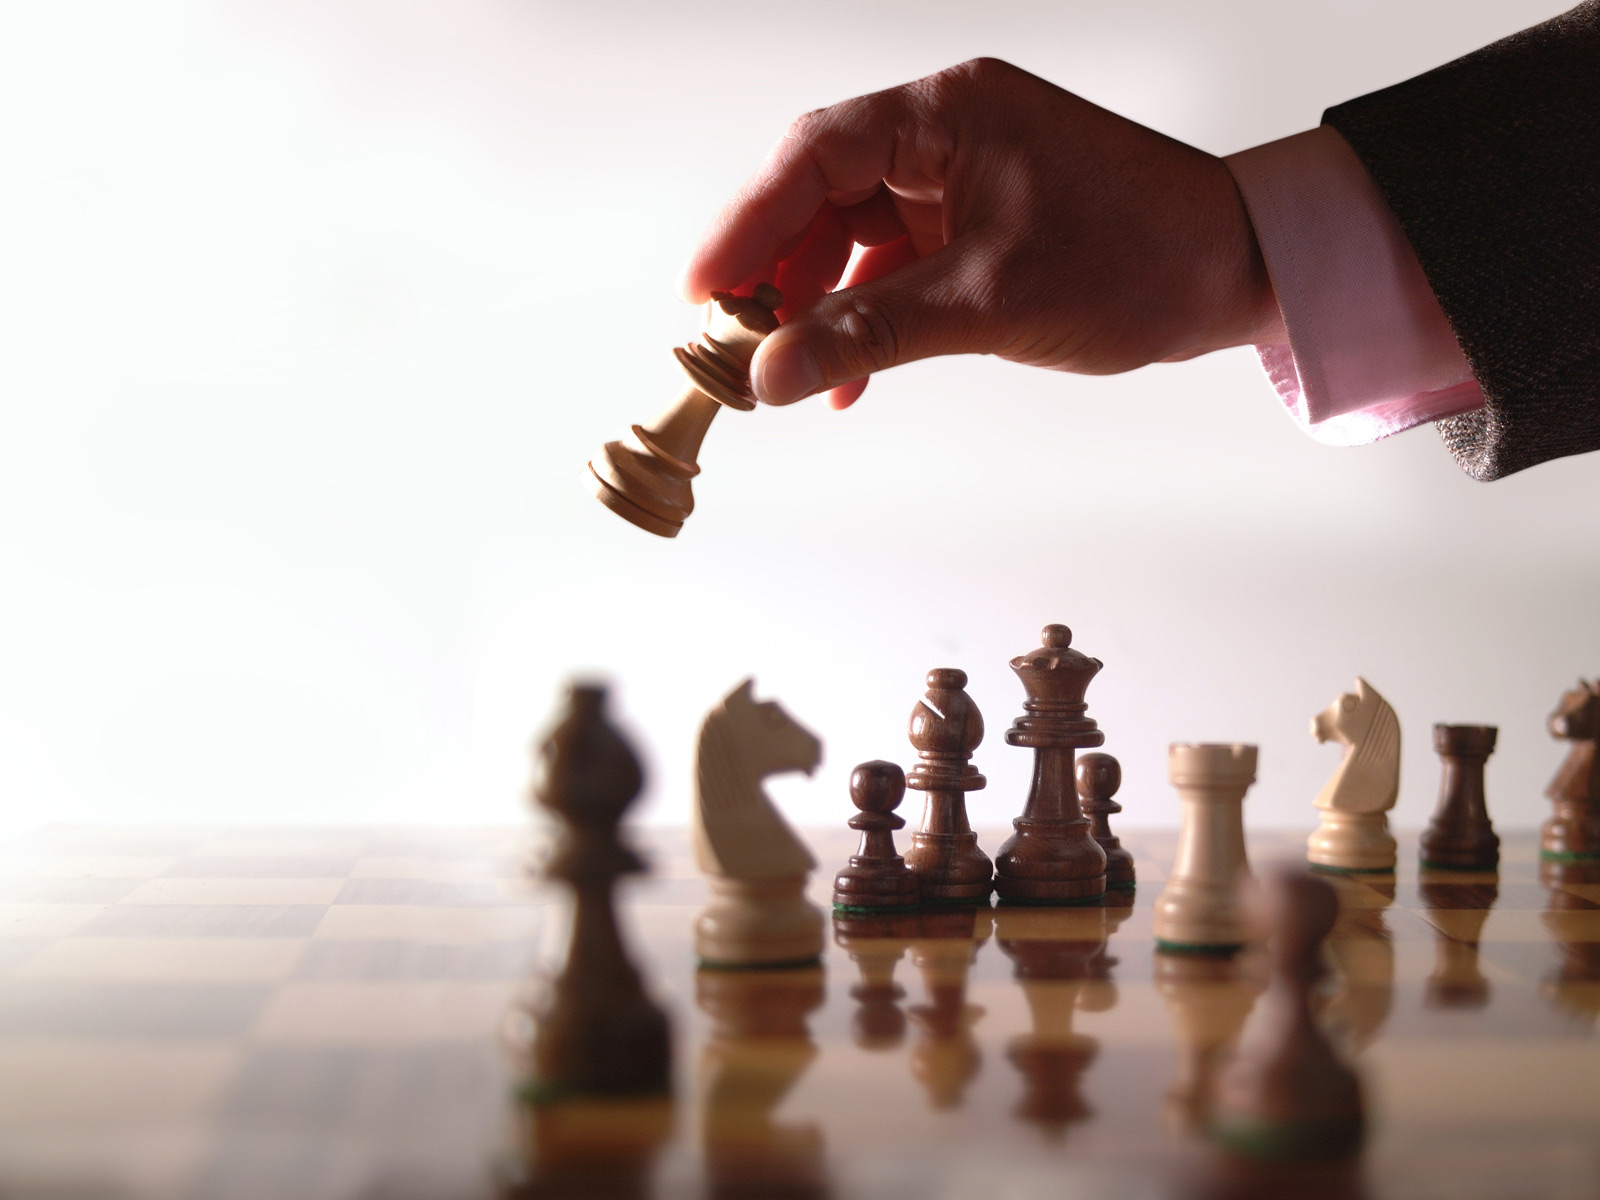 Xadrez, jogo da inteligência e concentração - Blog João Nassif - 4oito